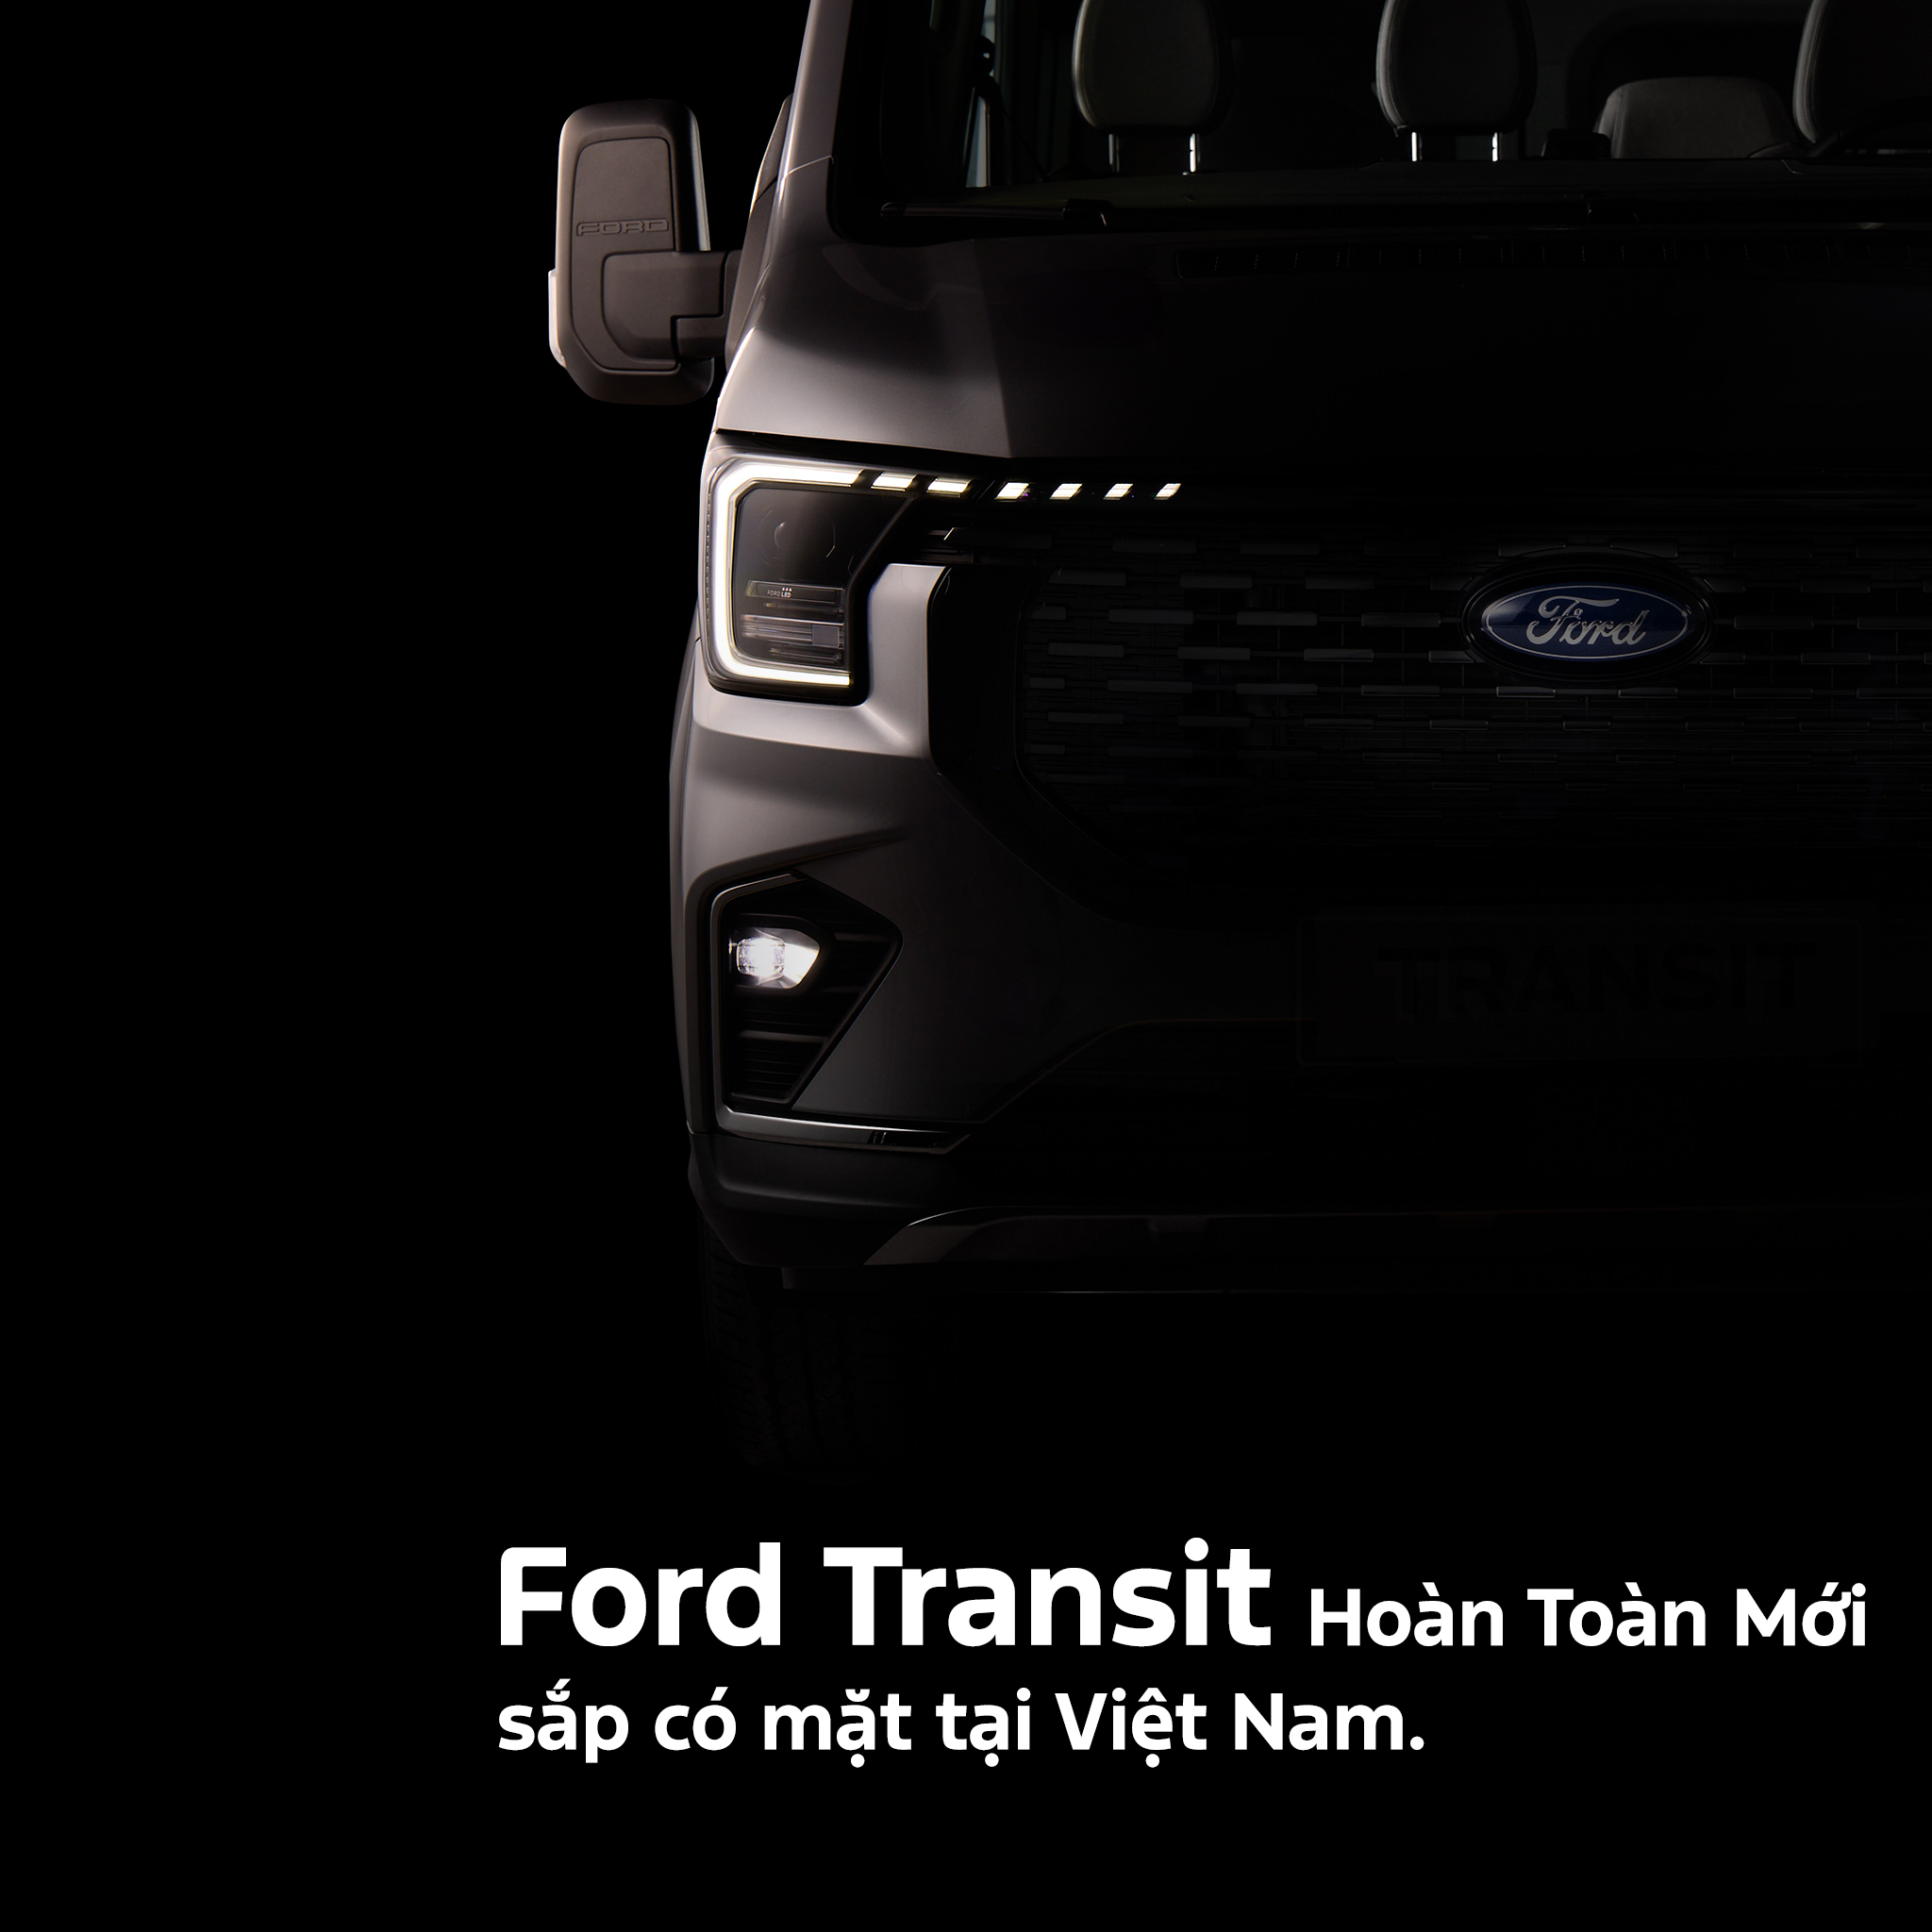 Ford Transit Hoàn toàn mới